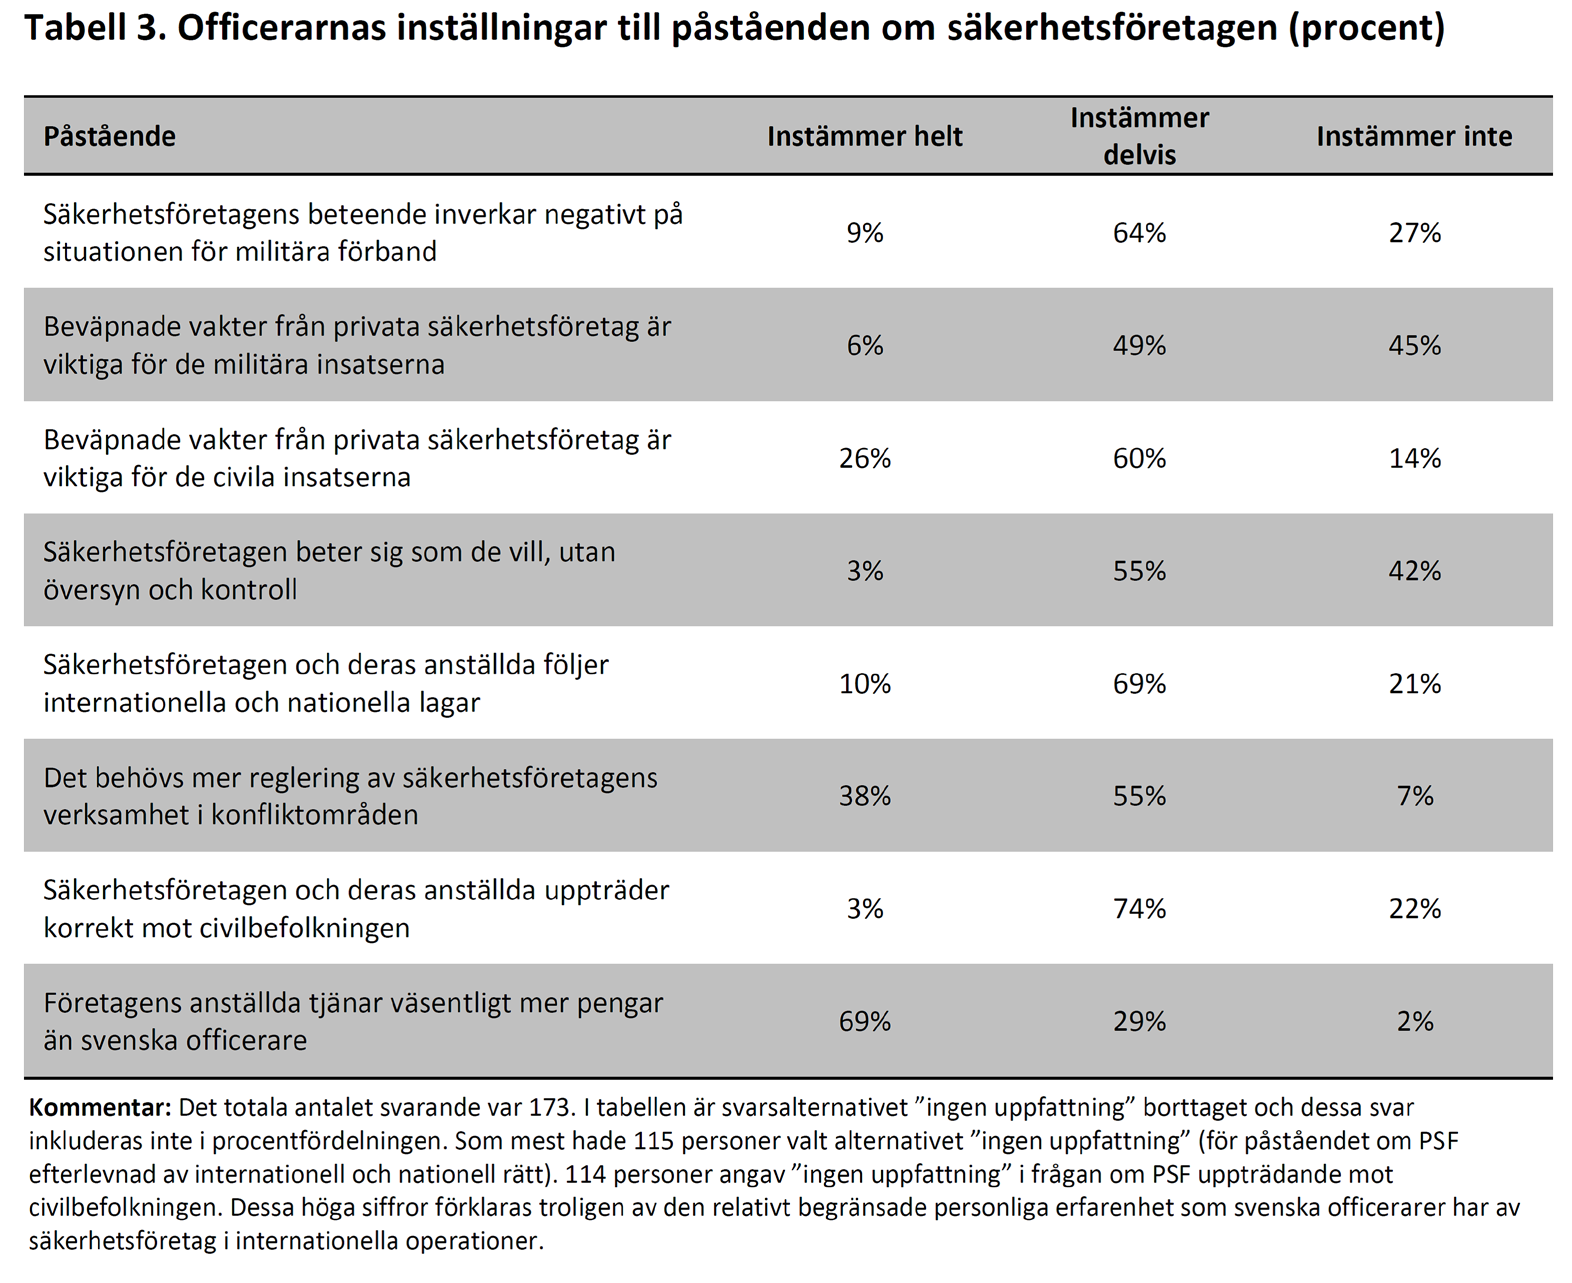 Joakim Berndtsson Den privata säkerhetssektorn i internationella operationer GRI-rapport 2012:2 Tabellen ger en översikt över officerarnas inställning i ett flertal frågor.